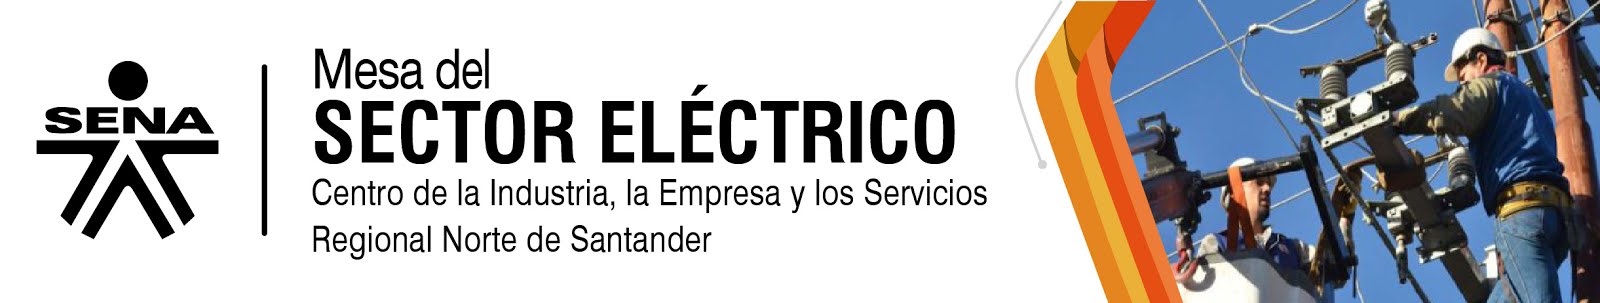 Mesa del Sector Eléctrico Colombiano